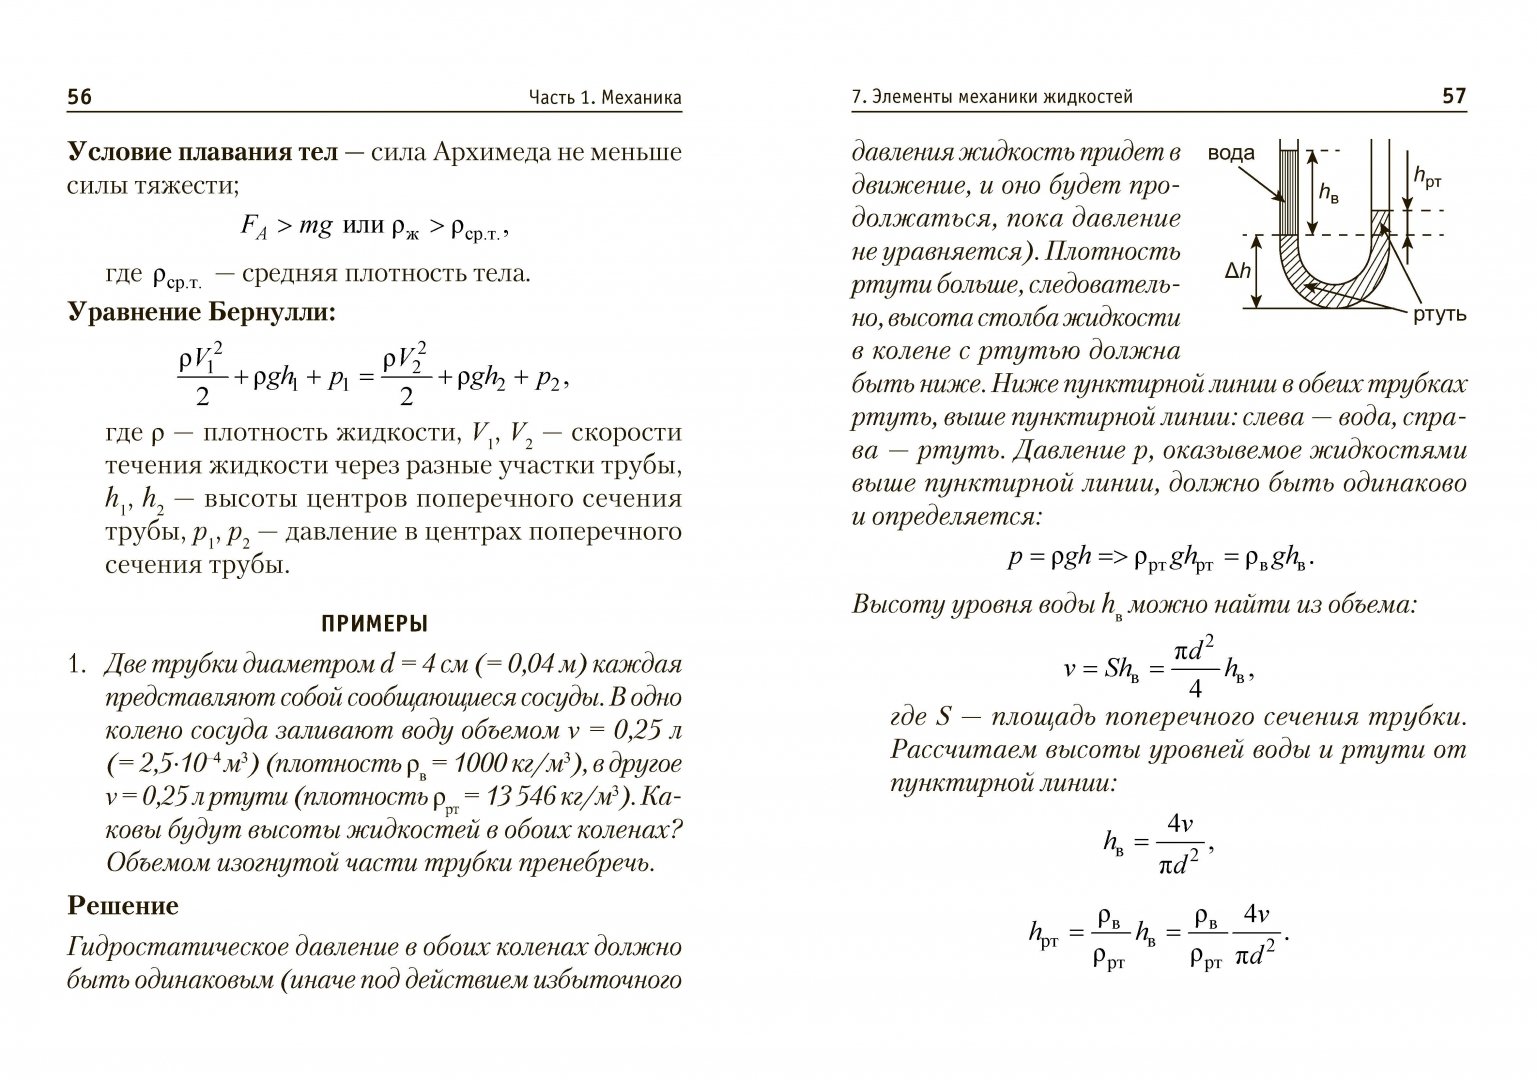 Иллюстрация 1 из 6 для Сборник формул по физике. Для студентов, преподавателей, школьников, абитуриентов - Ян Падаманов | Лабиринт - книги. Источник: Лабиринт